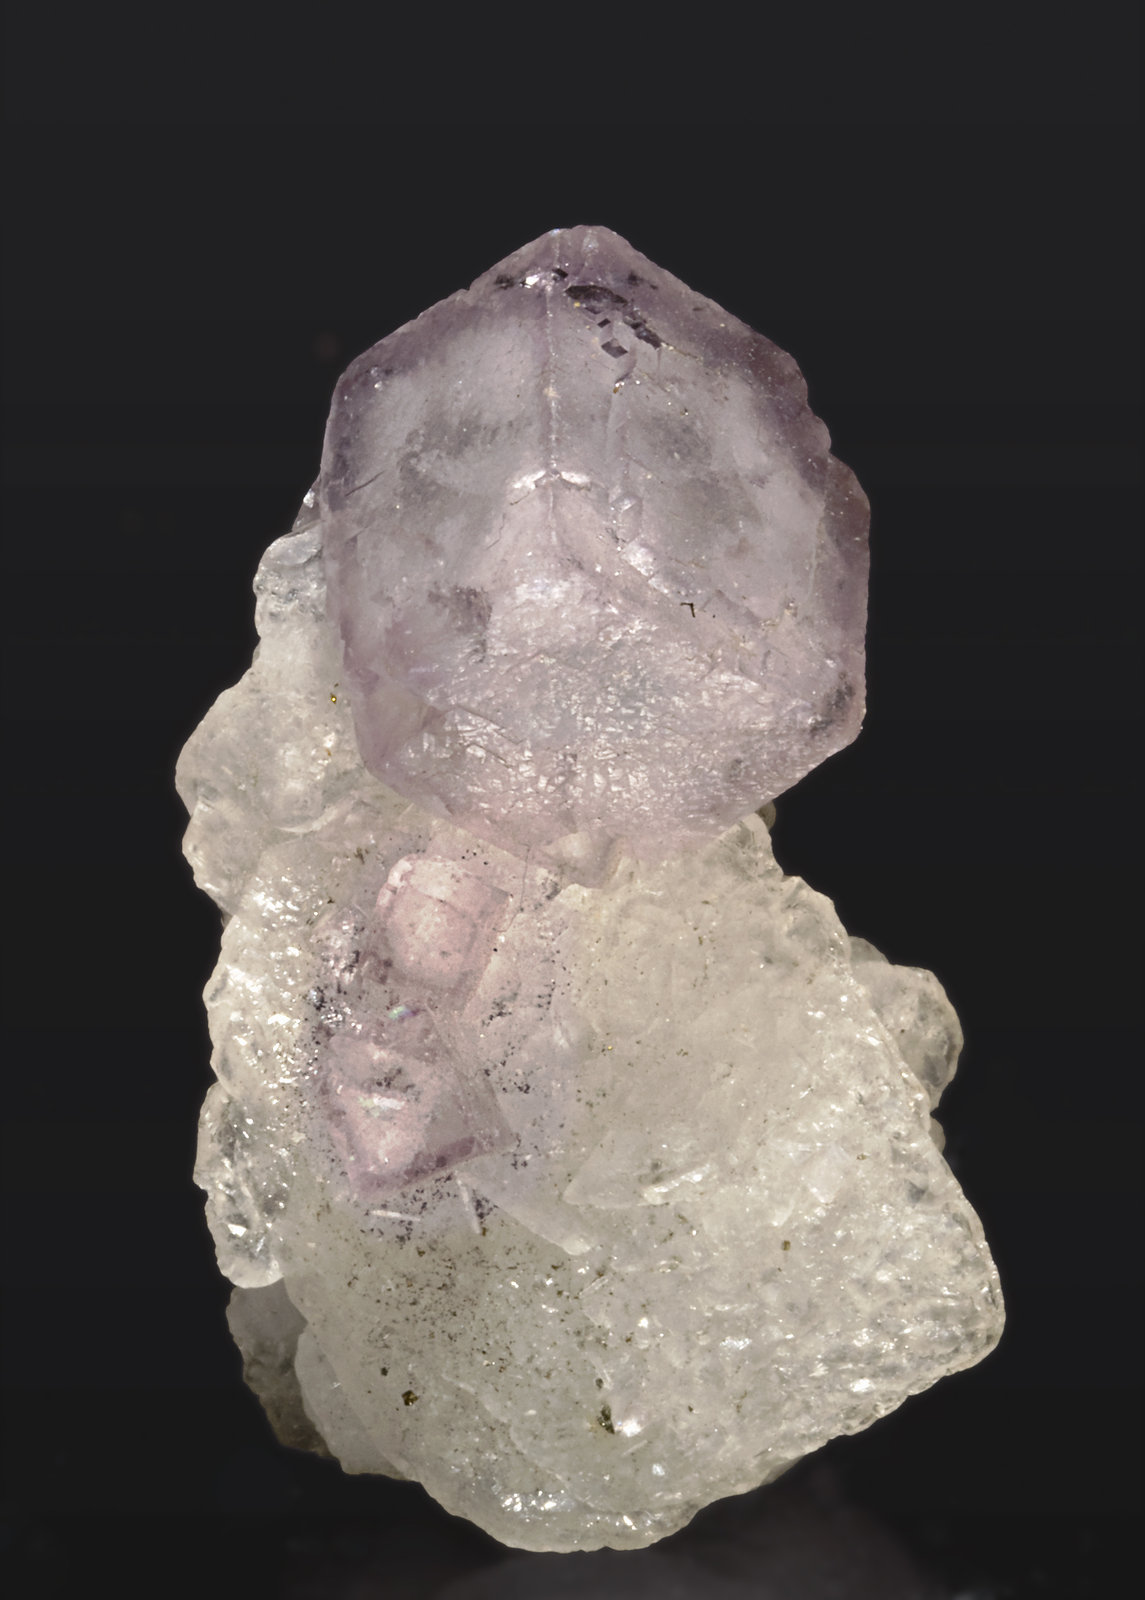 specimens/s_imagesR9/Fluorite-MD46R9.jpg